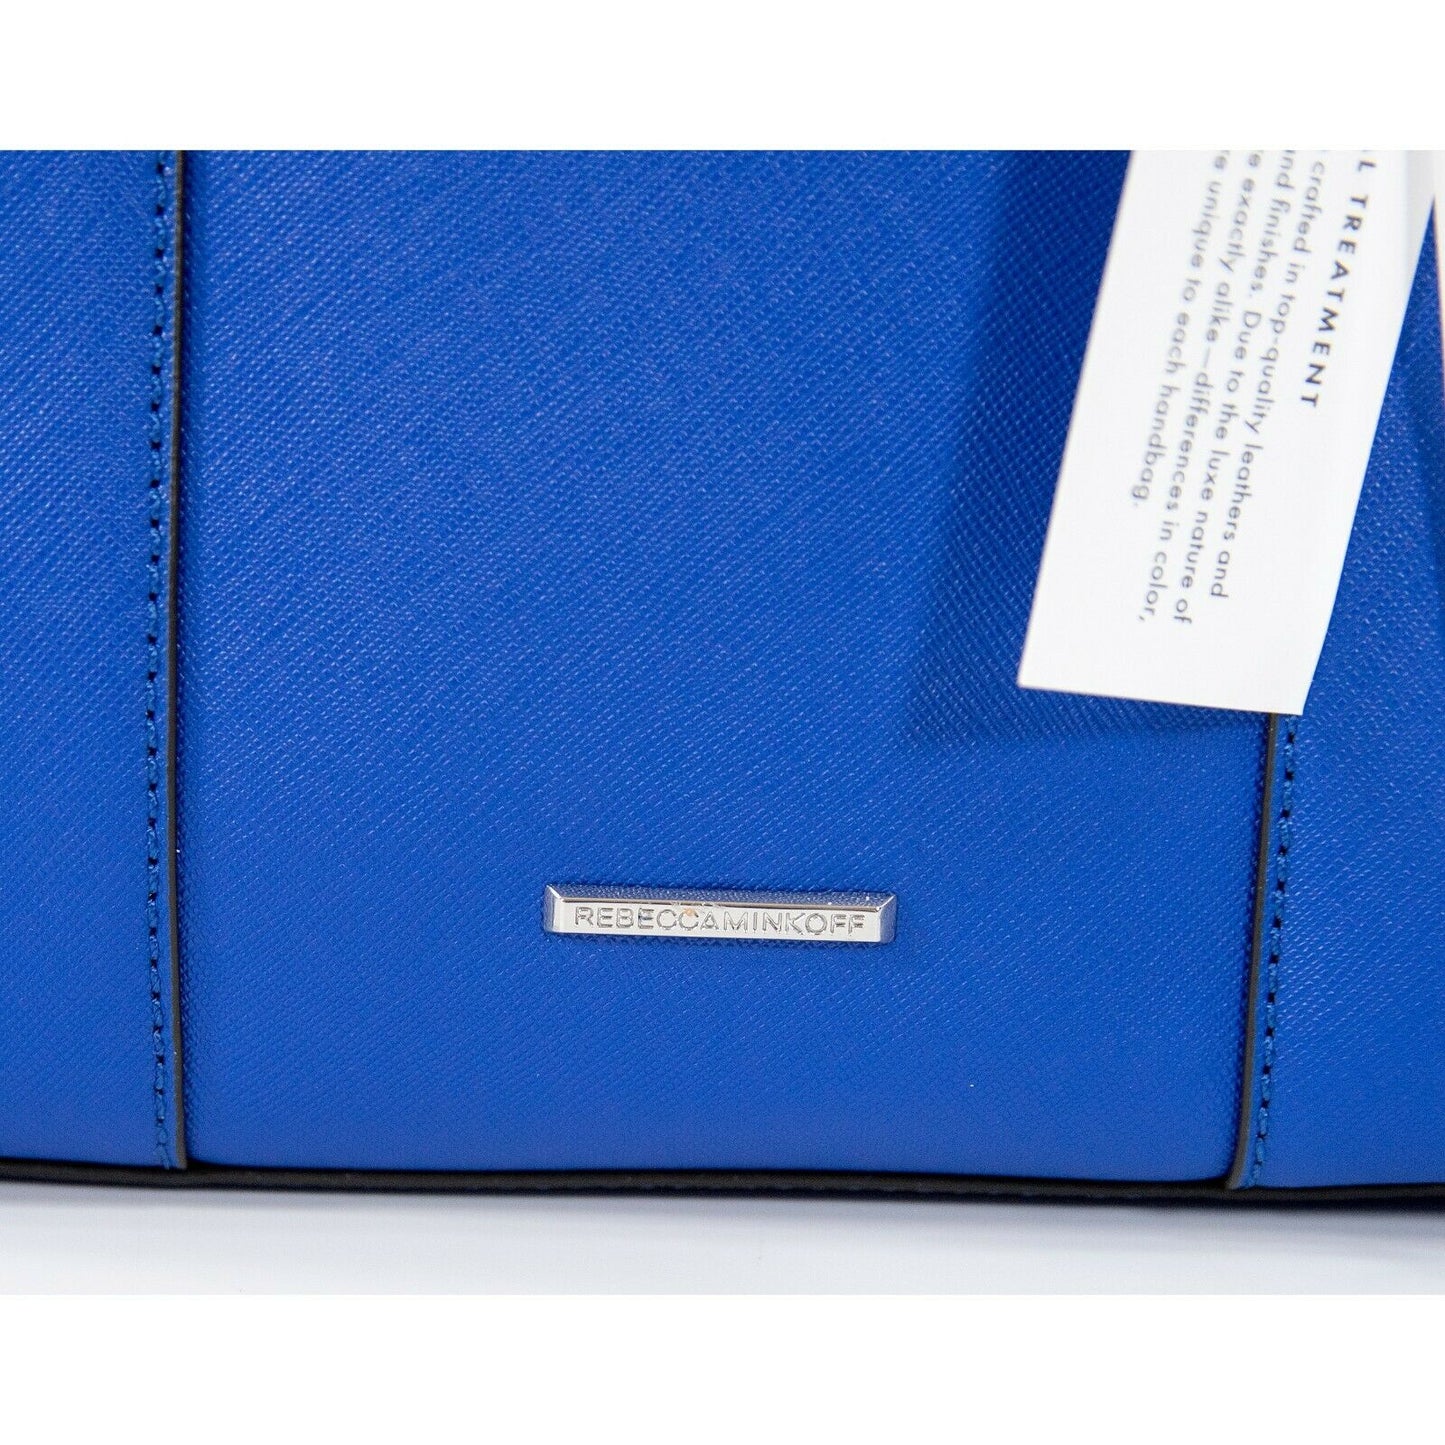 Rebecca Minkoff MAB Bright Blue Saffiano Leather Mini Tote NWT